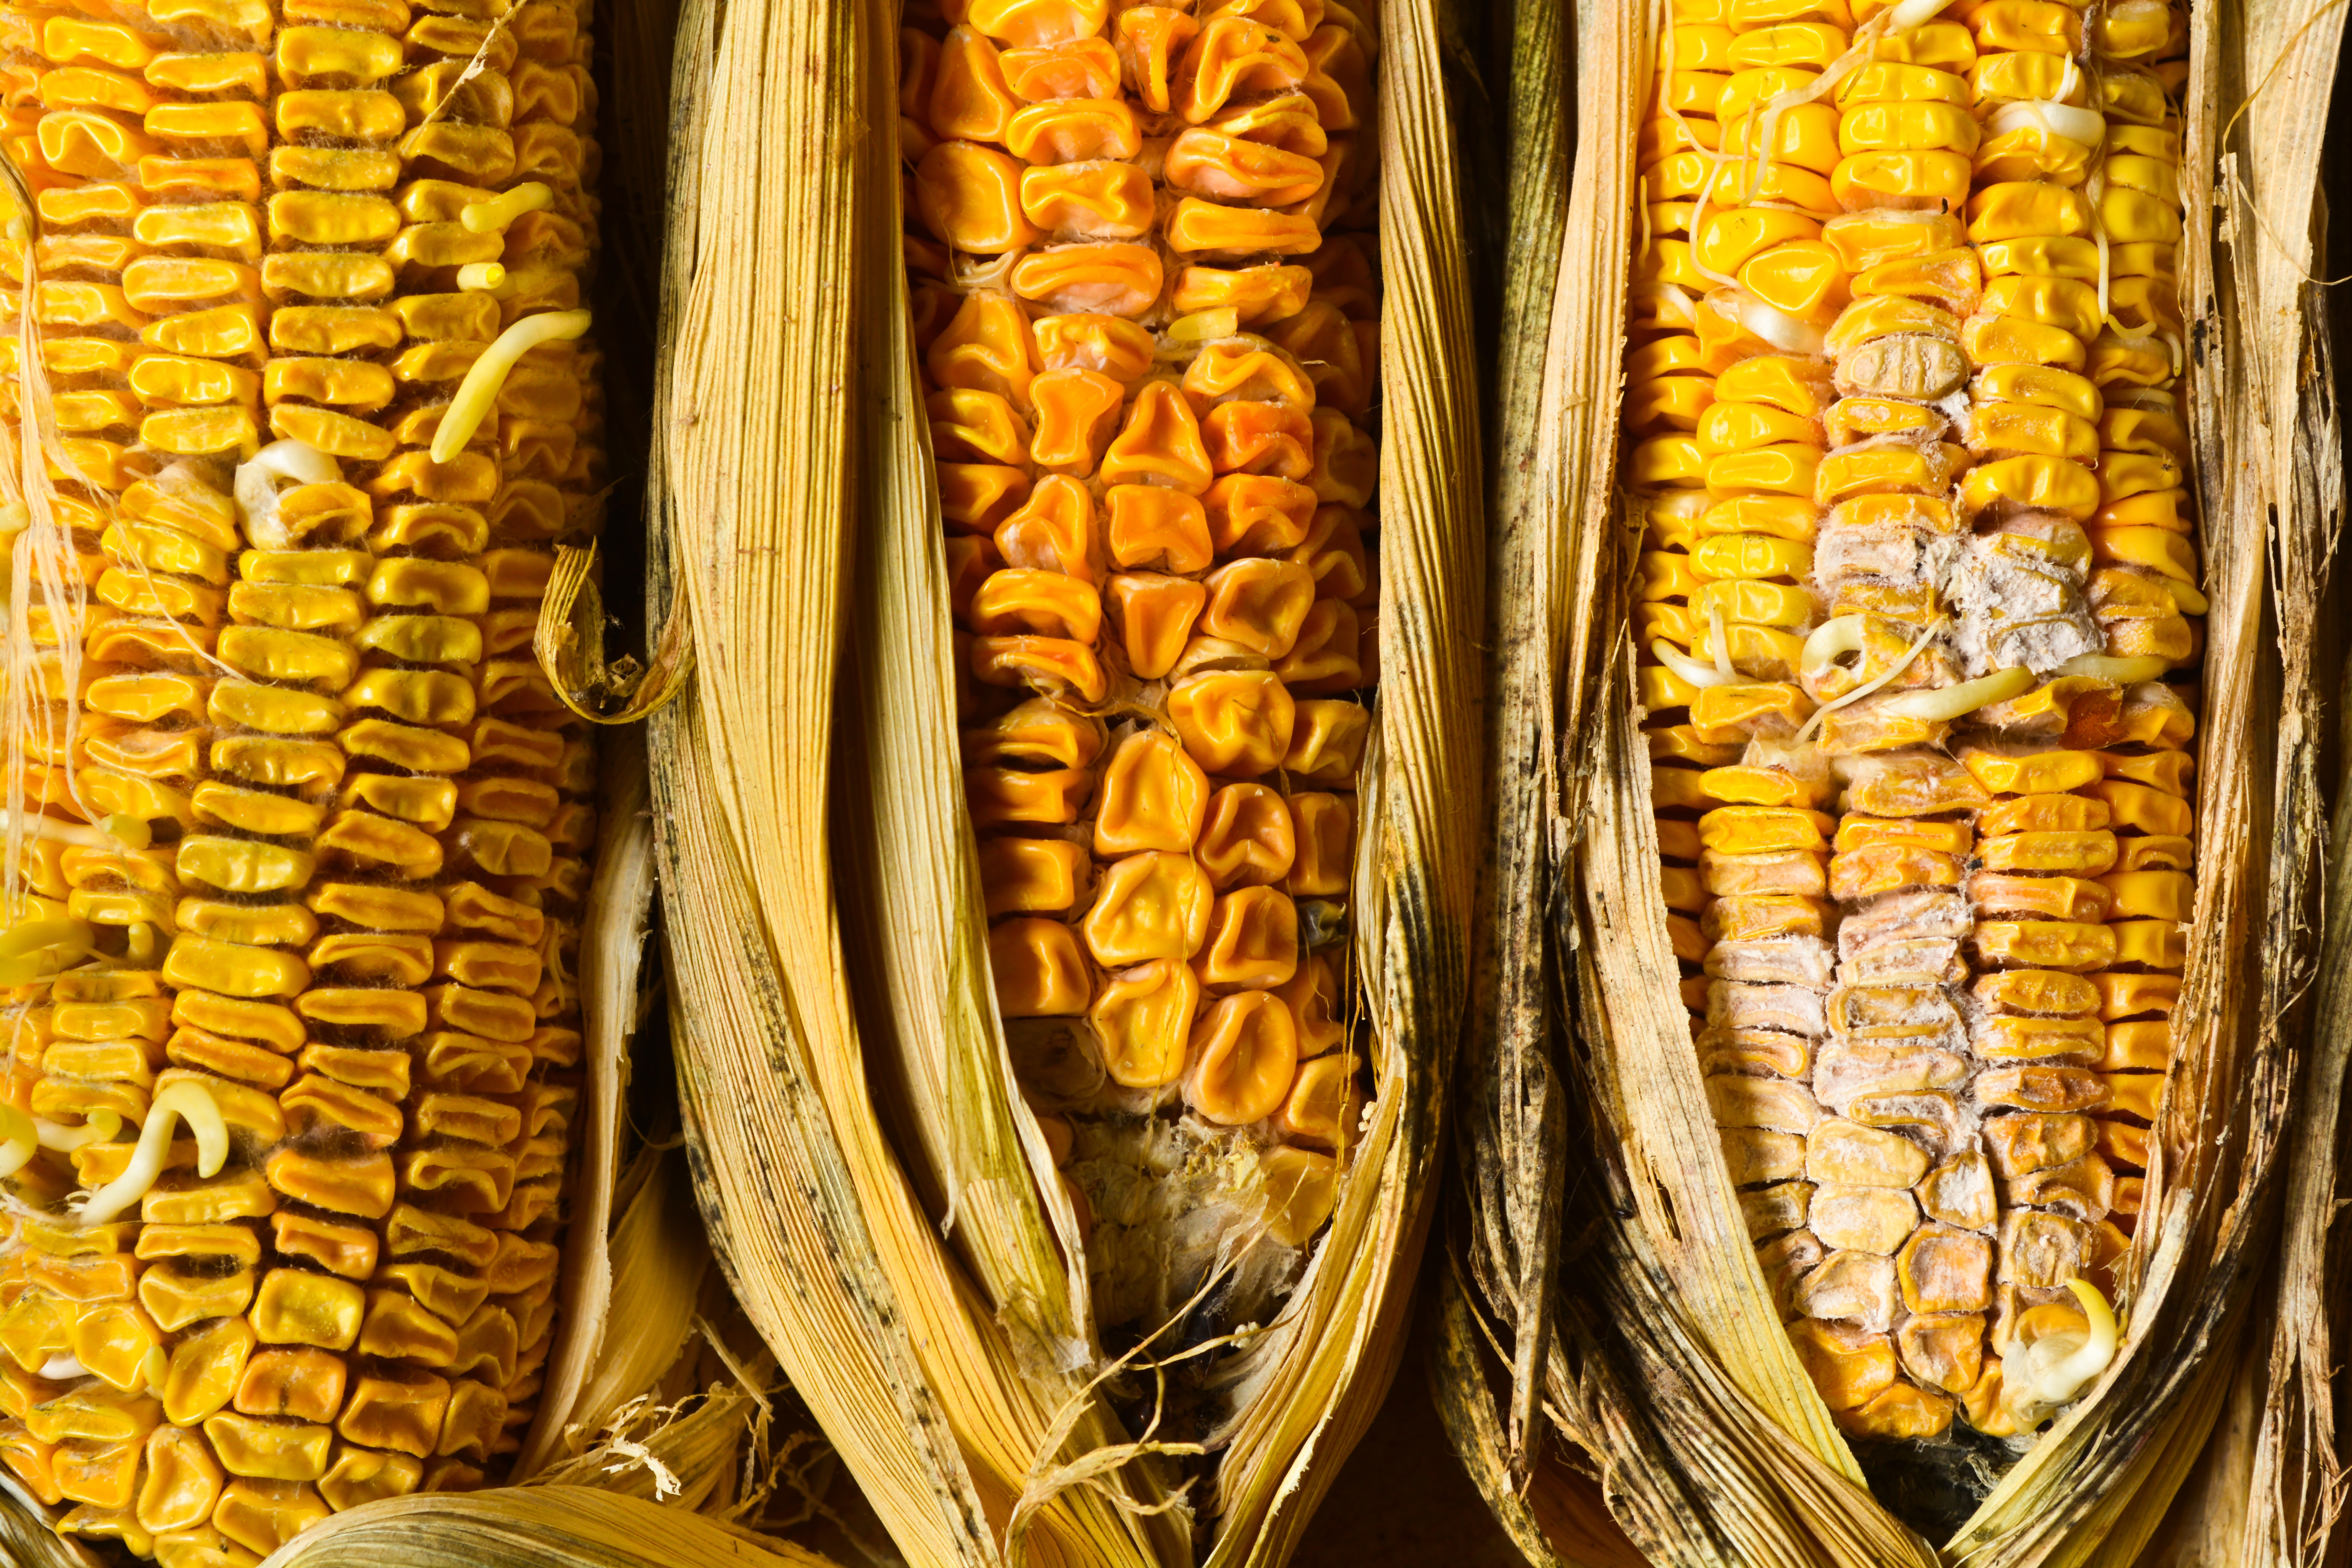 Corn-with-fusarium.jpg